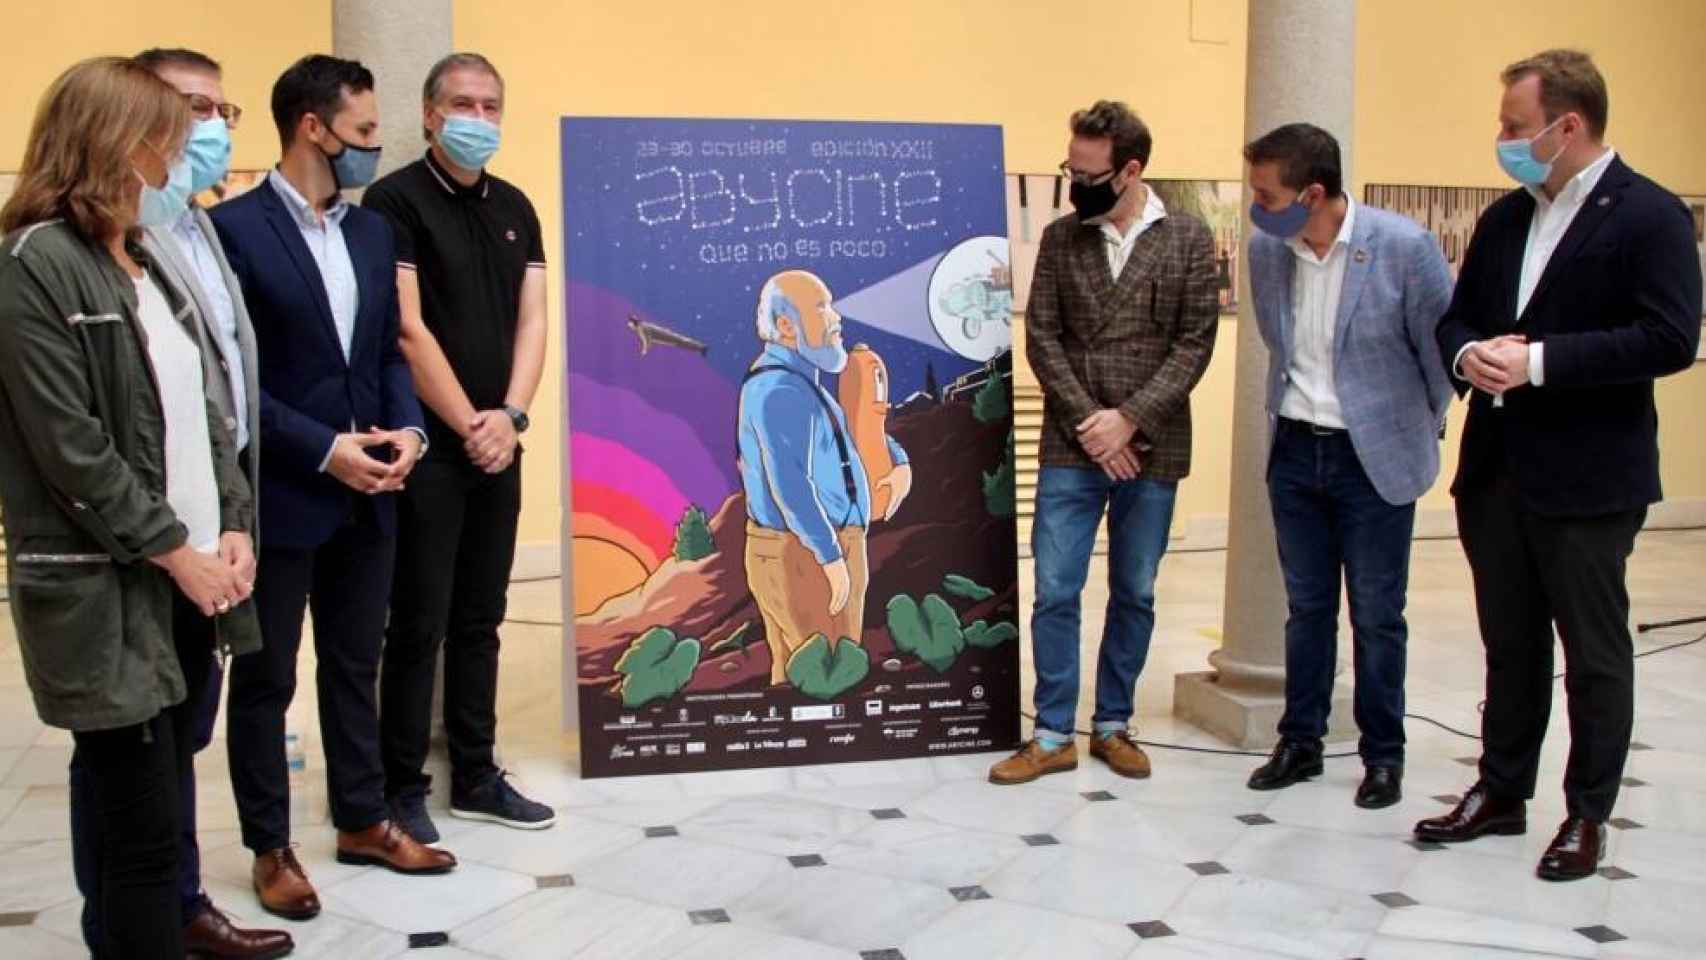 Presentación del cartel Abycine 2020, obra del humorista albaceteño Joaquín Reyes